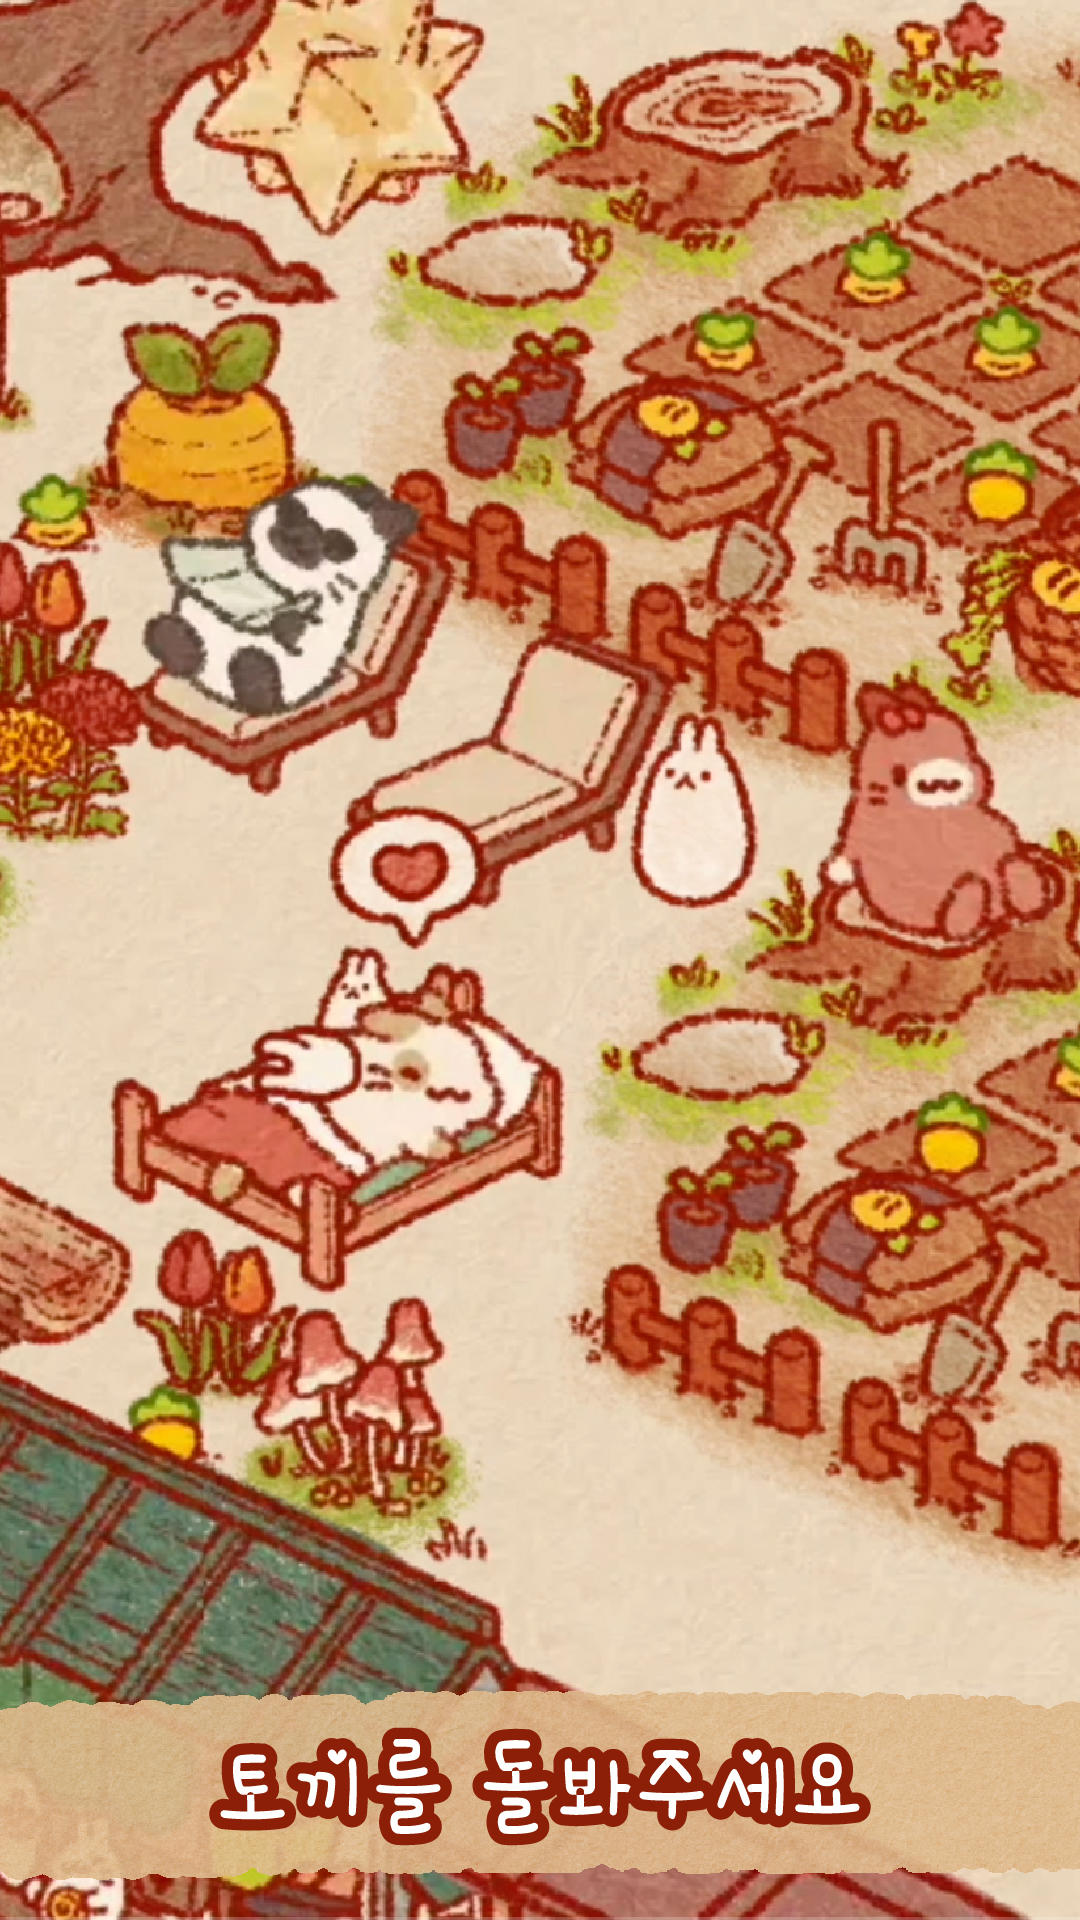 토끼의 섬: 귀여운 토끼 게임 게임 스크린 샷